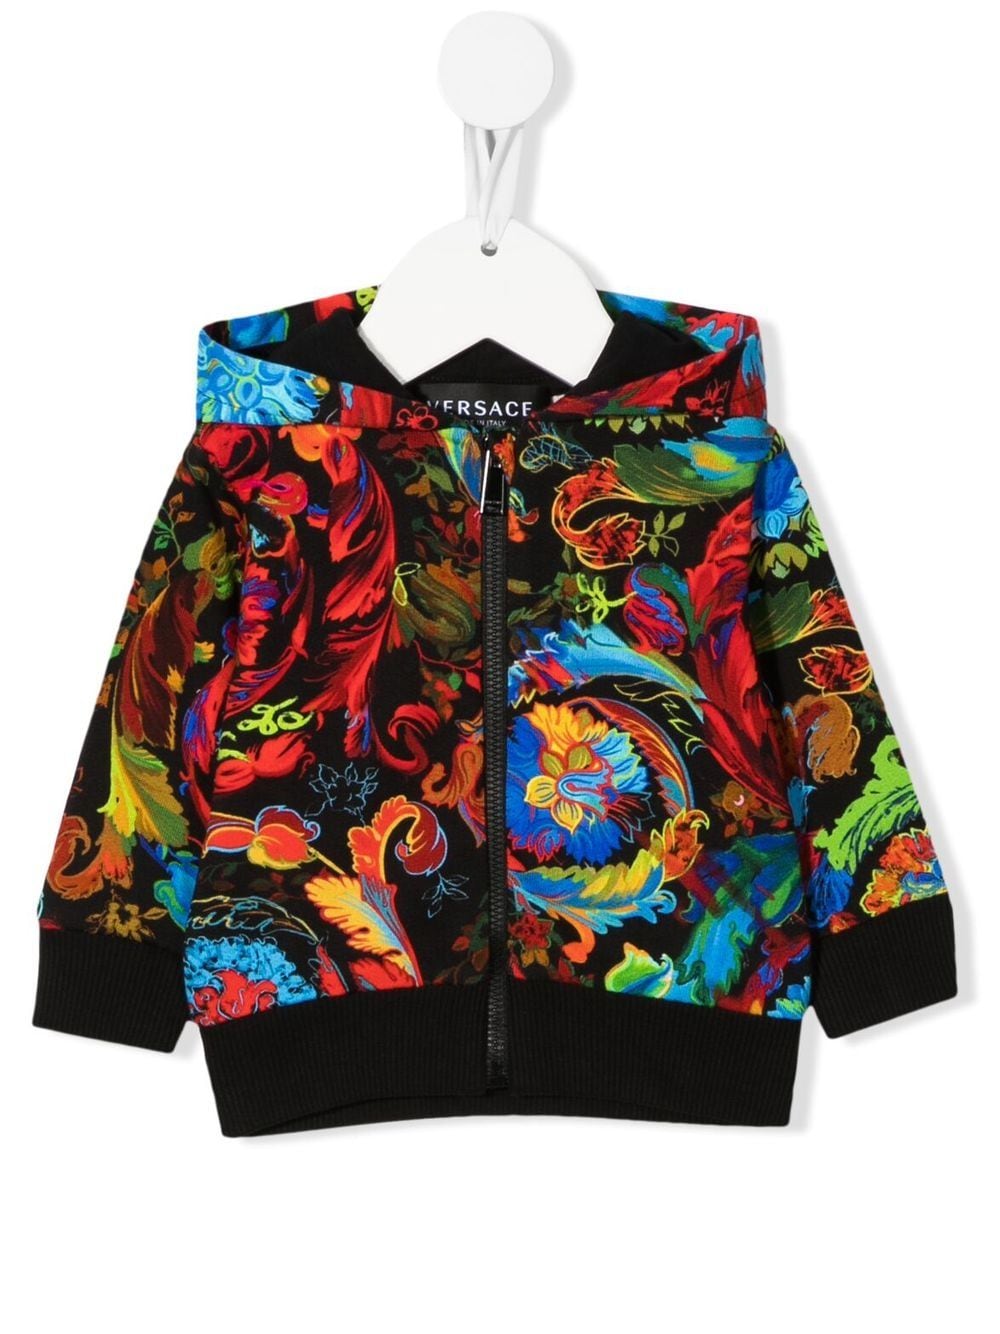 Versace Babies' Graphic Print Hooded Jacket In Black